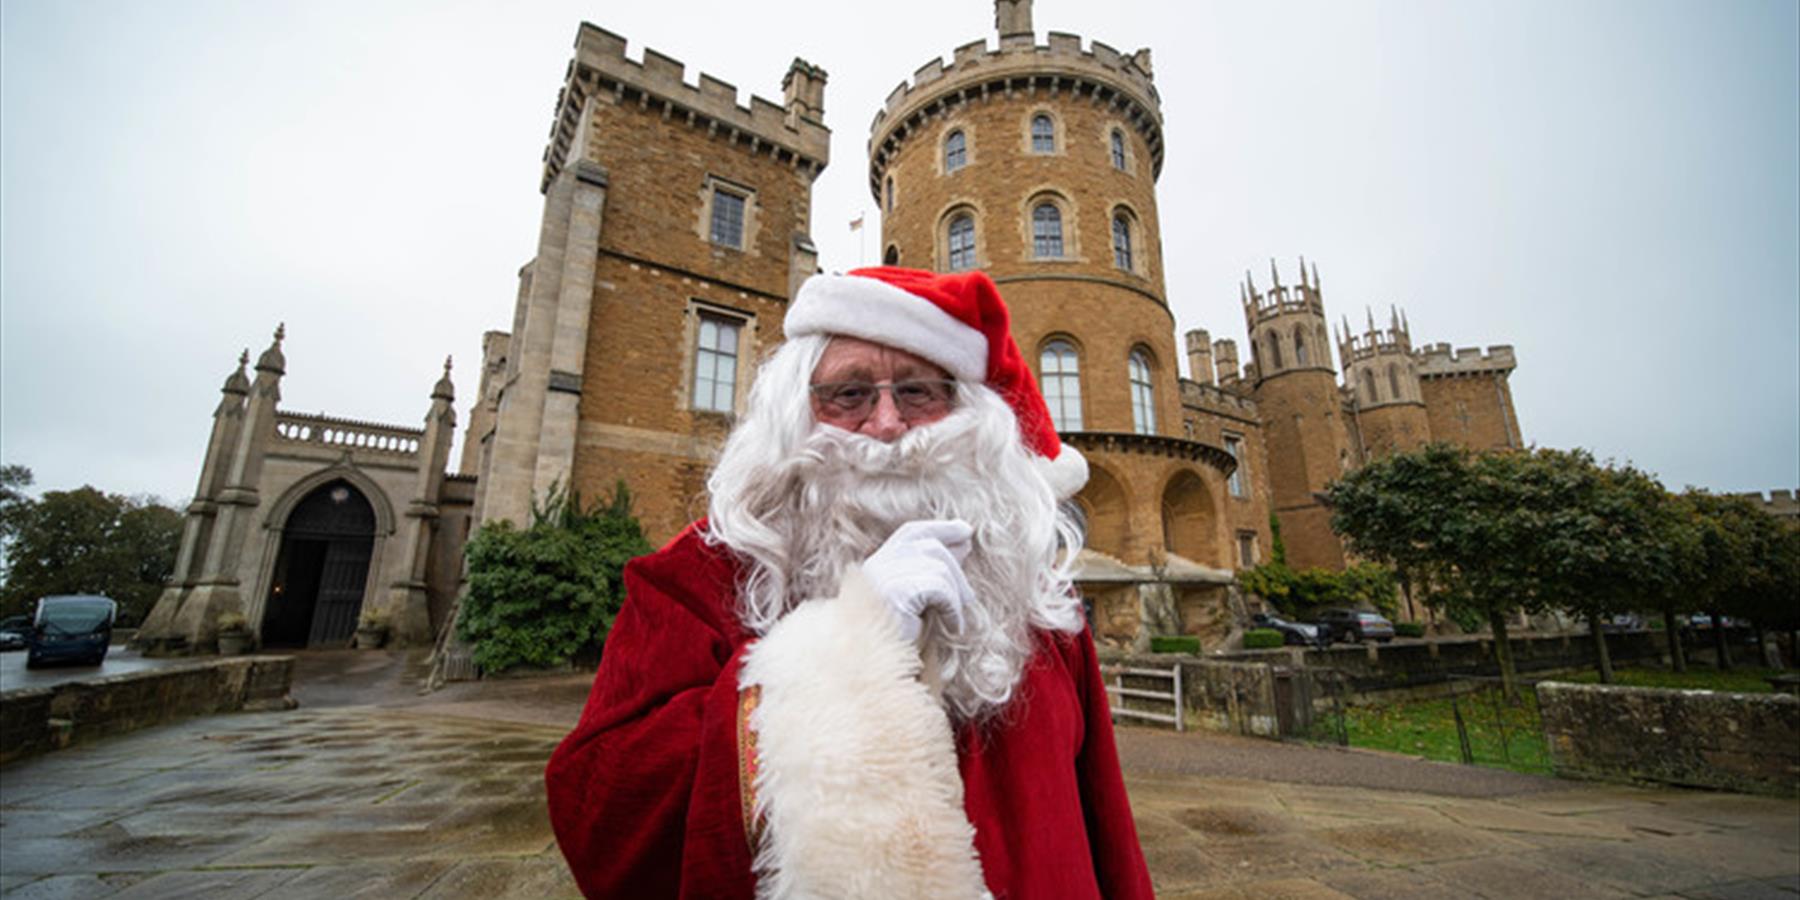 Christmas at Belvoir Castle